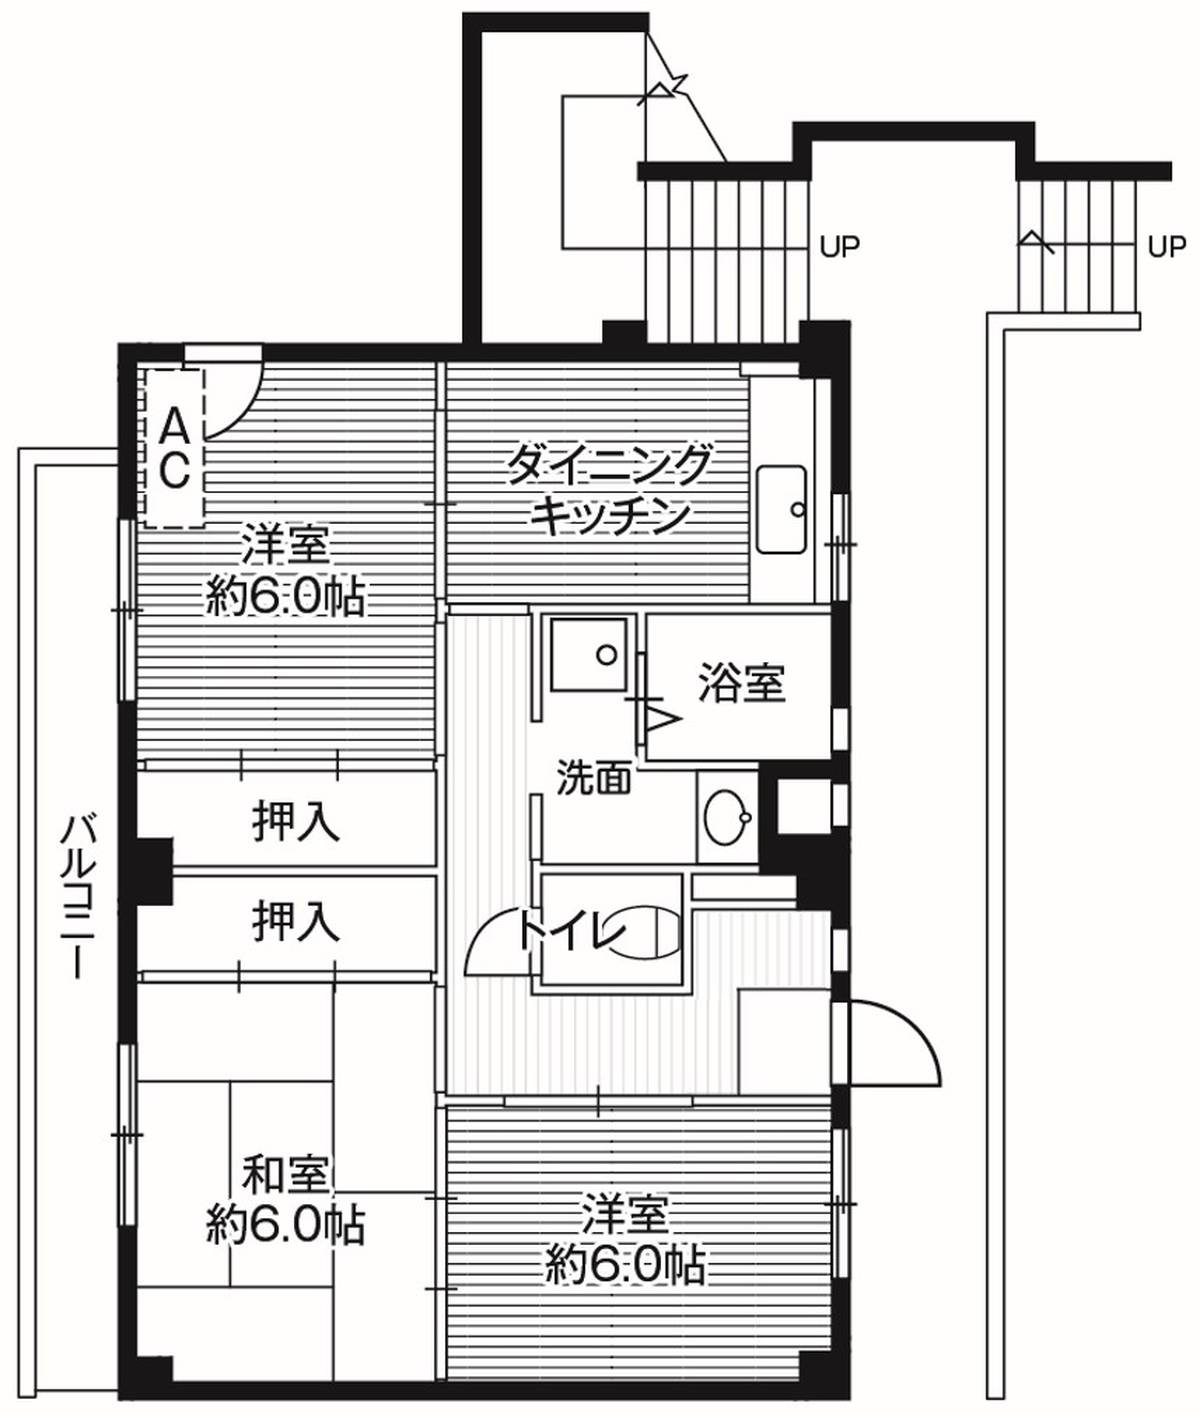 2LDK floorplan of Village House Taya in Fukaya-shi